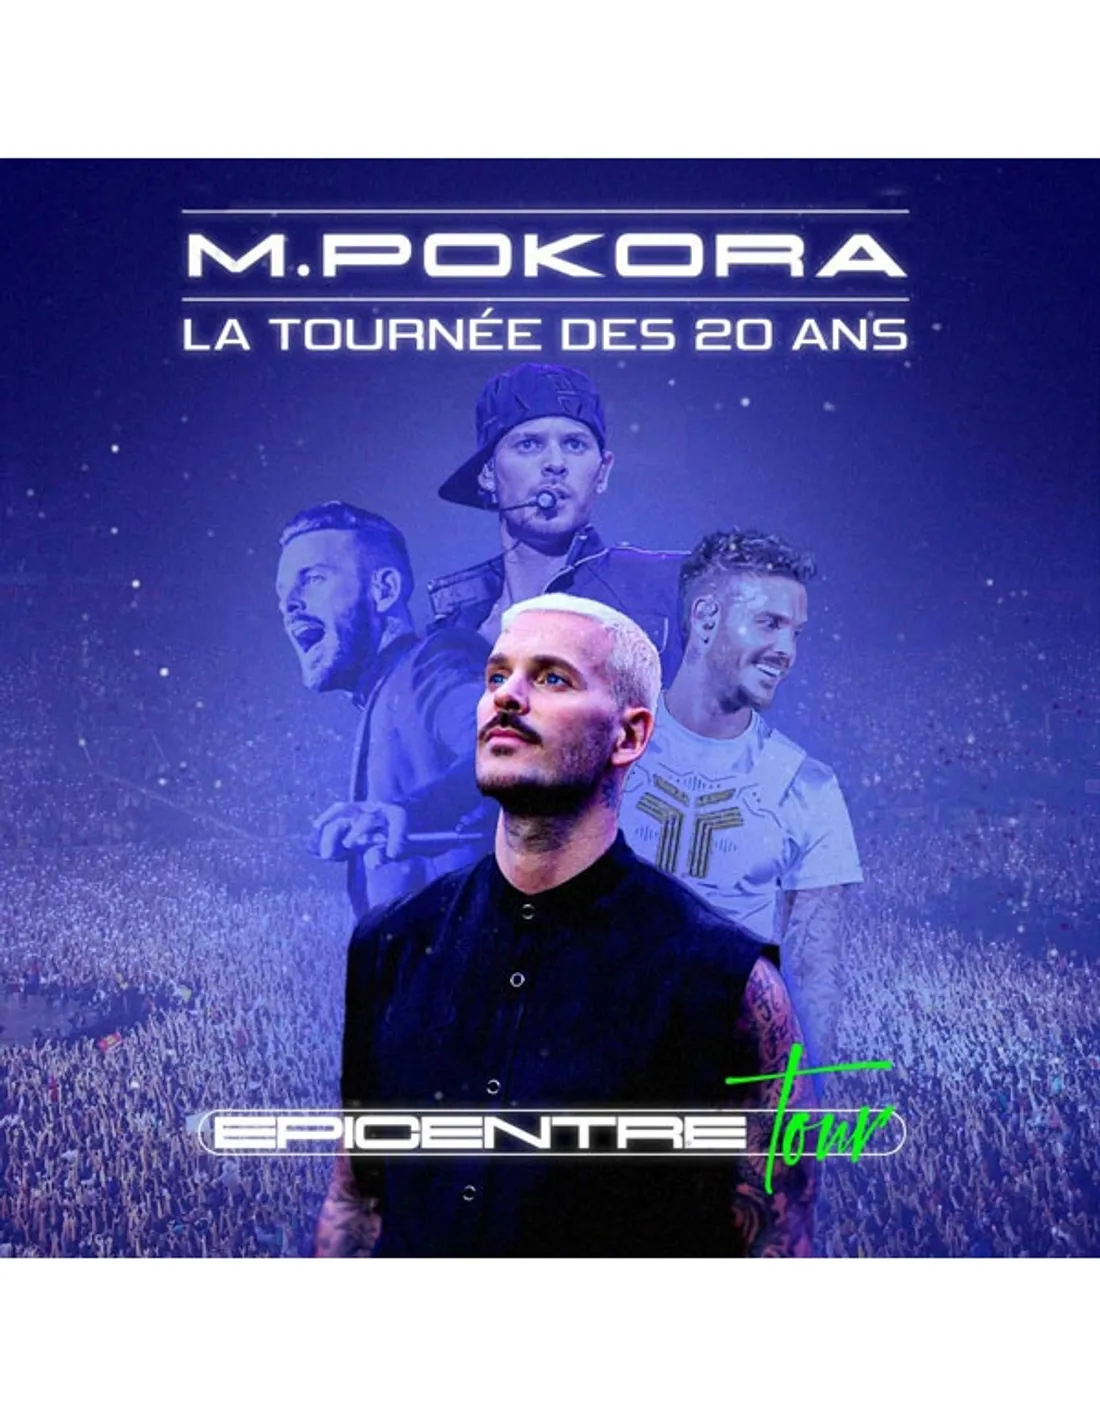 M. Pokora en concert au Zénith de St-Etienne